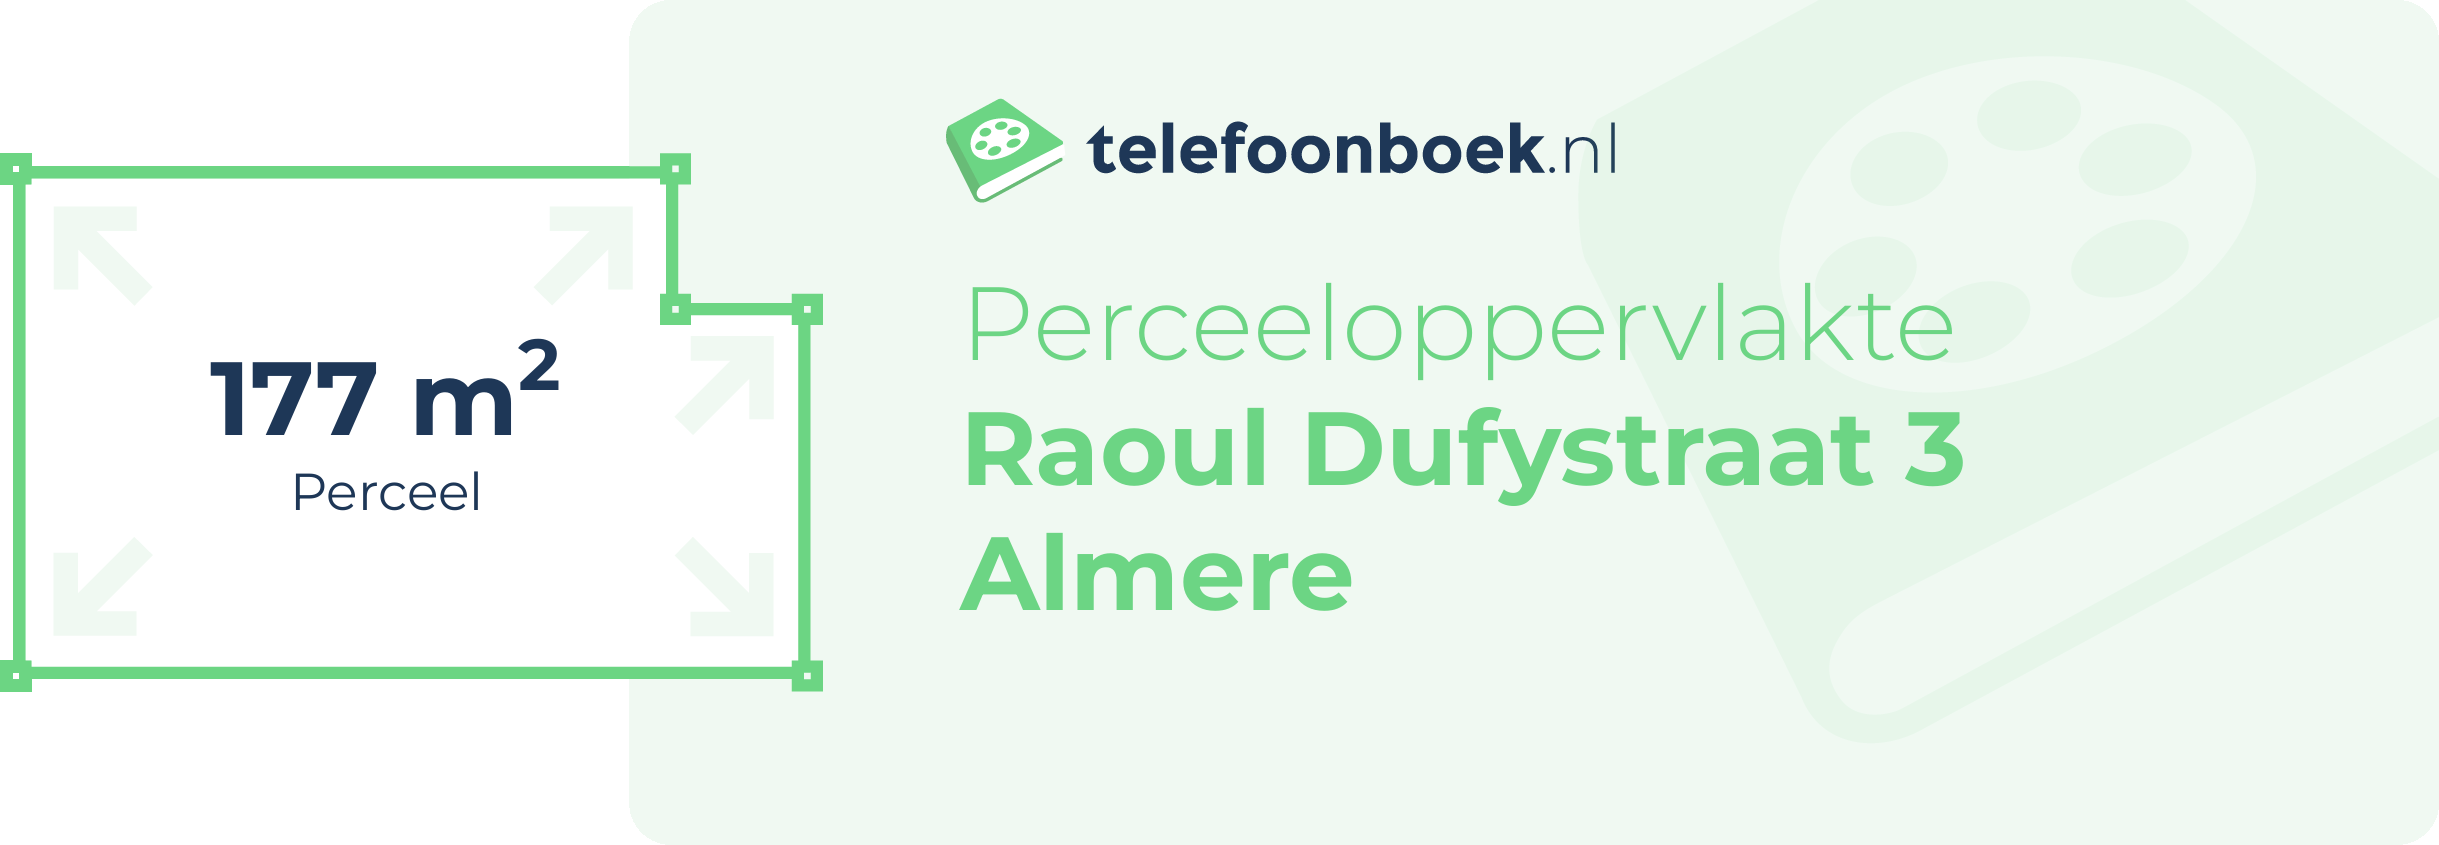 Perceeloppervlakte Raoul Dufystraat 3 Almere